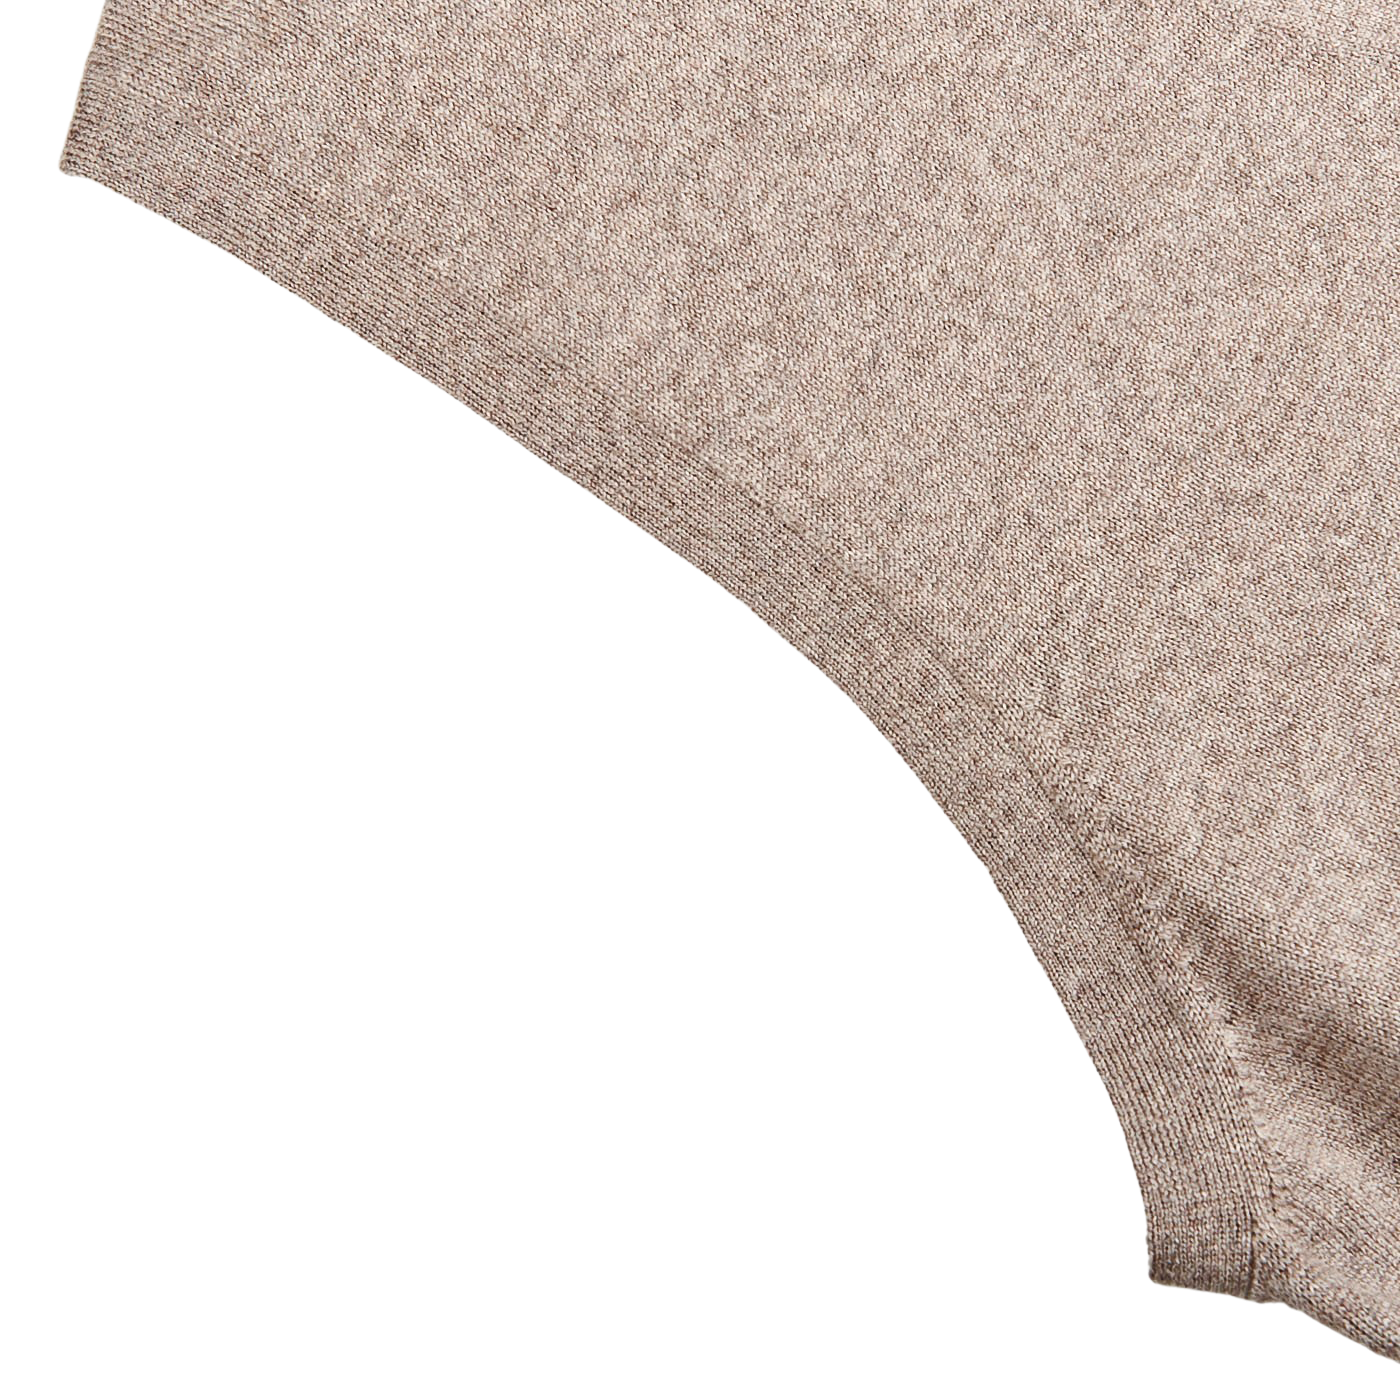 Gran Sasso | Beige Extra Fine Merino Wool Vest